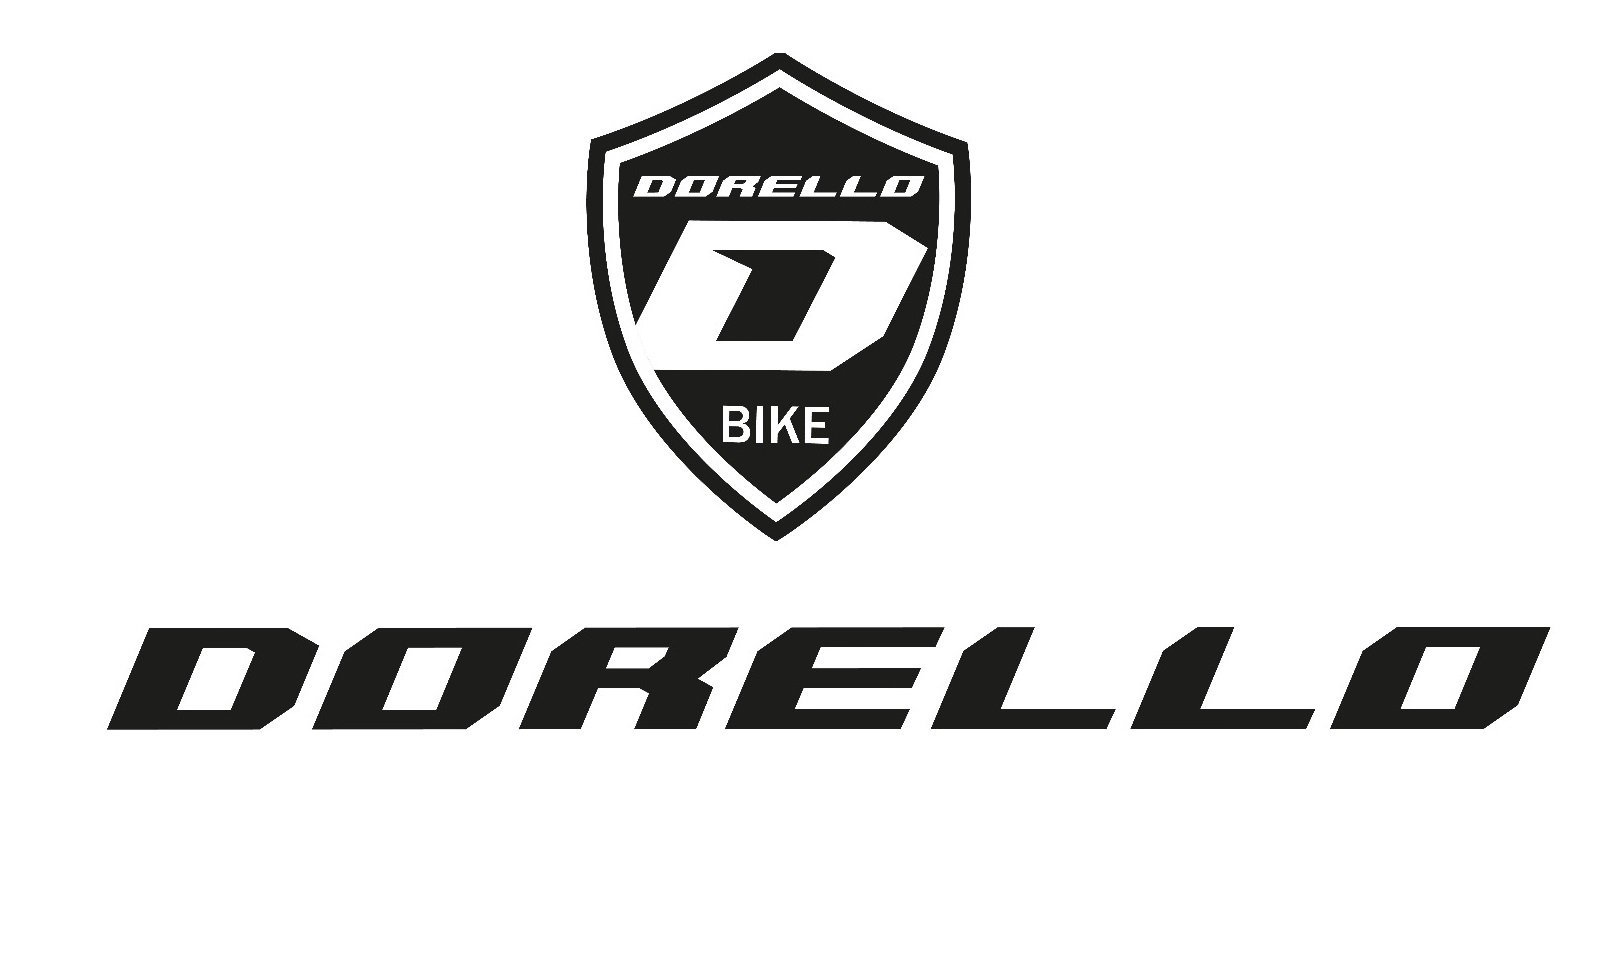 Dorello elektrikli bisiklet 48 volt L17 model  imalattan elektrikli bisiklet cargo transporter akülü bisiklet elektrikli-Dorello elektrikli bisiklet cargo-